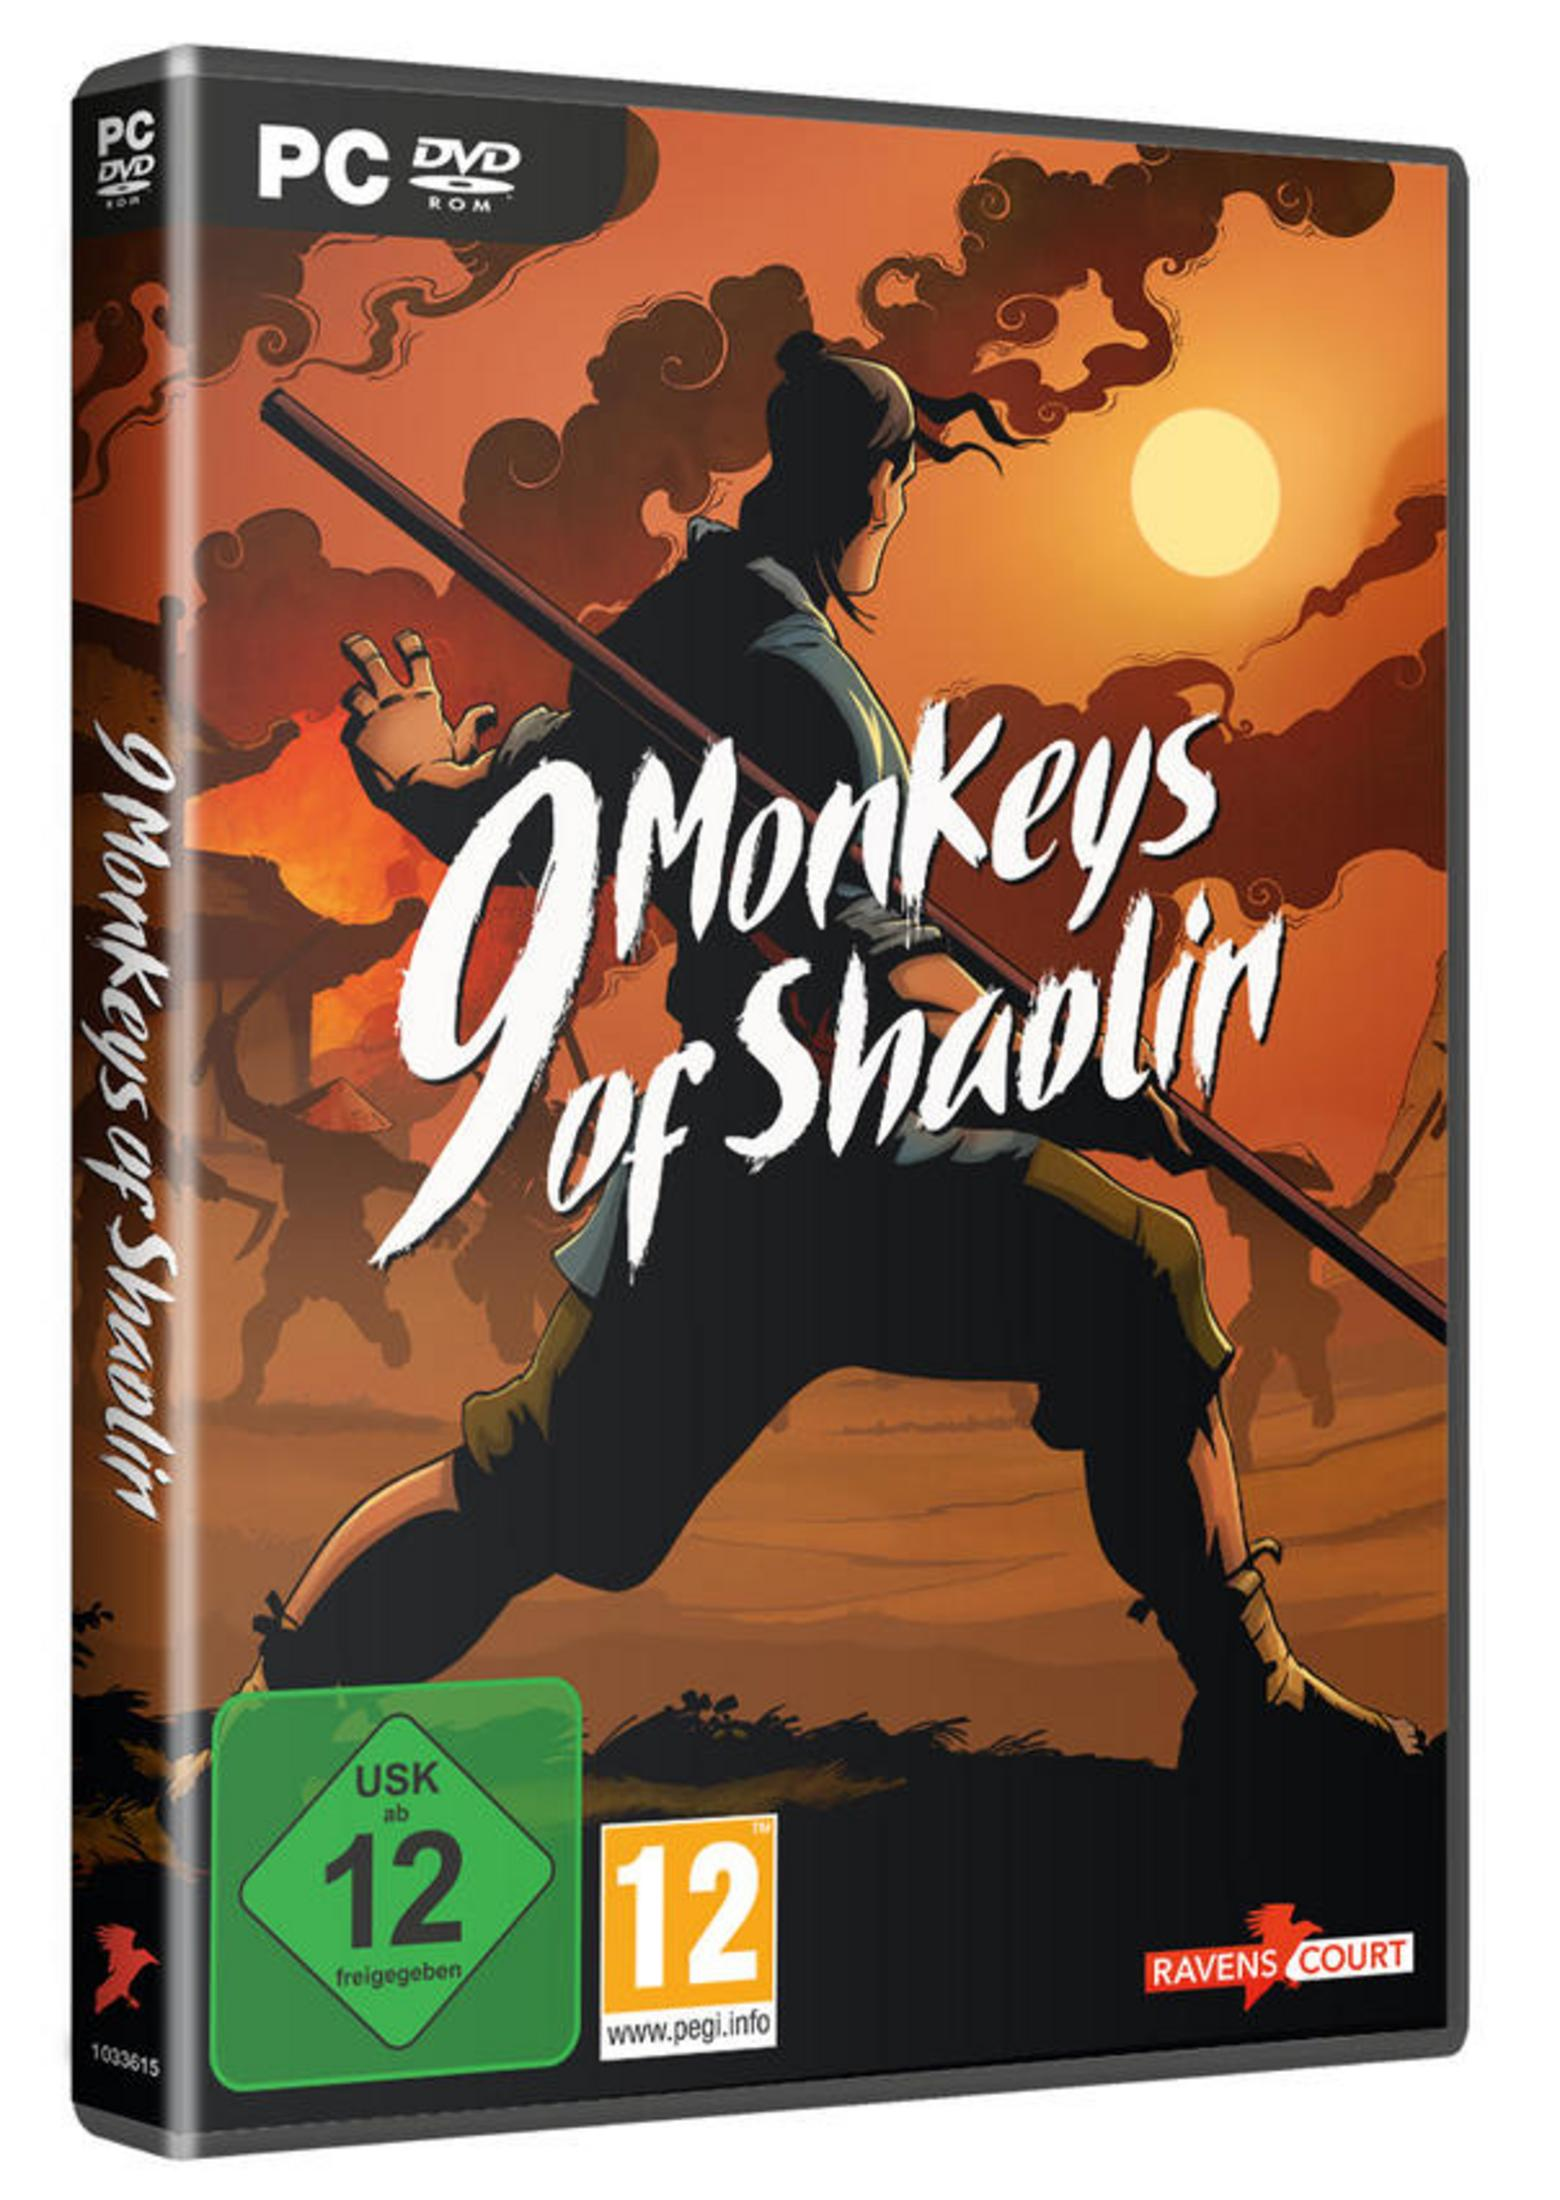 9 Monkeys Shaolin - [PC] of